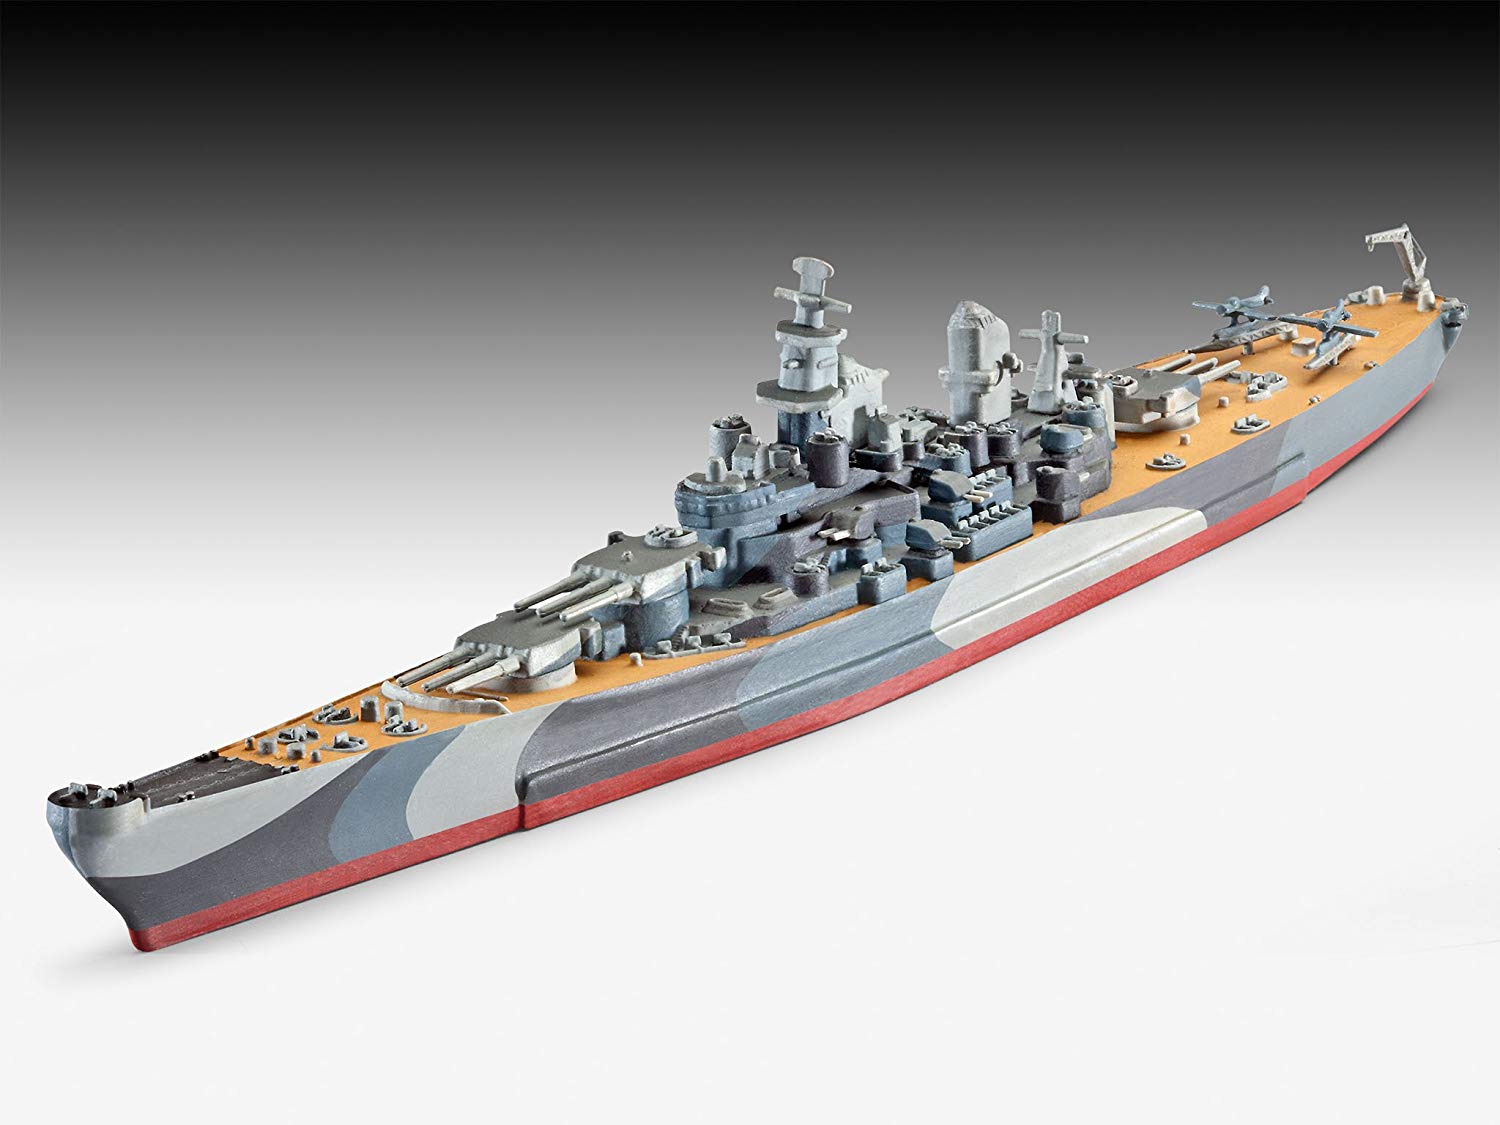 Revell Uss Missouri Battleship Scale Model Kit My Xxx Hot Girl